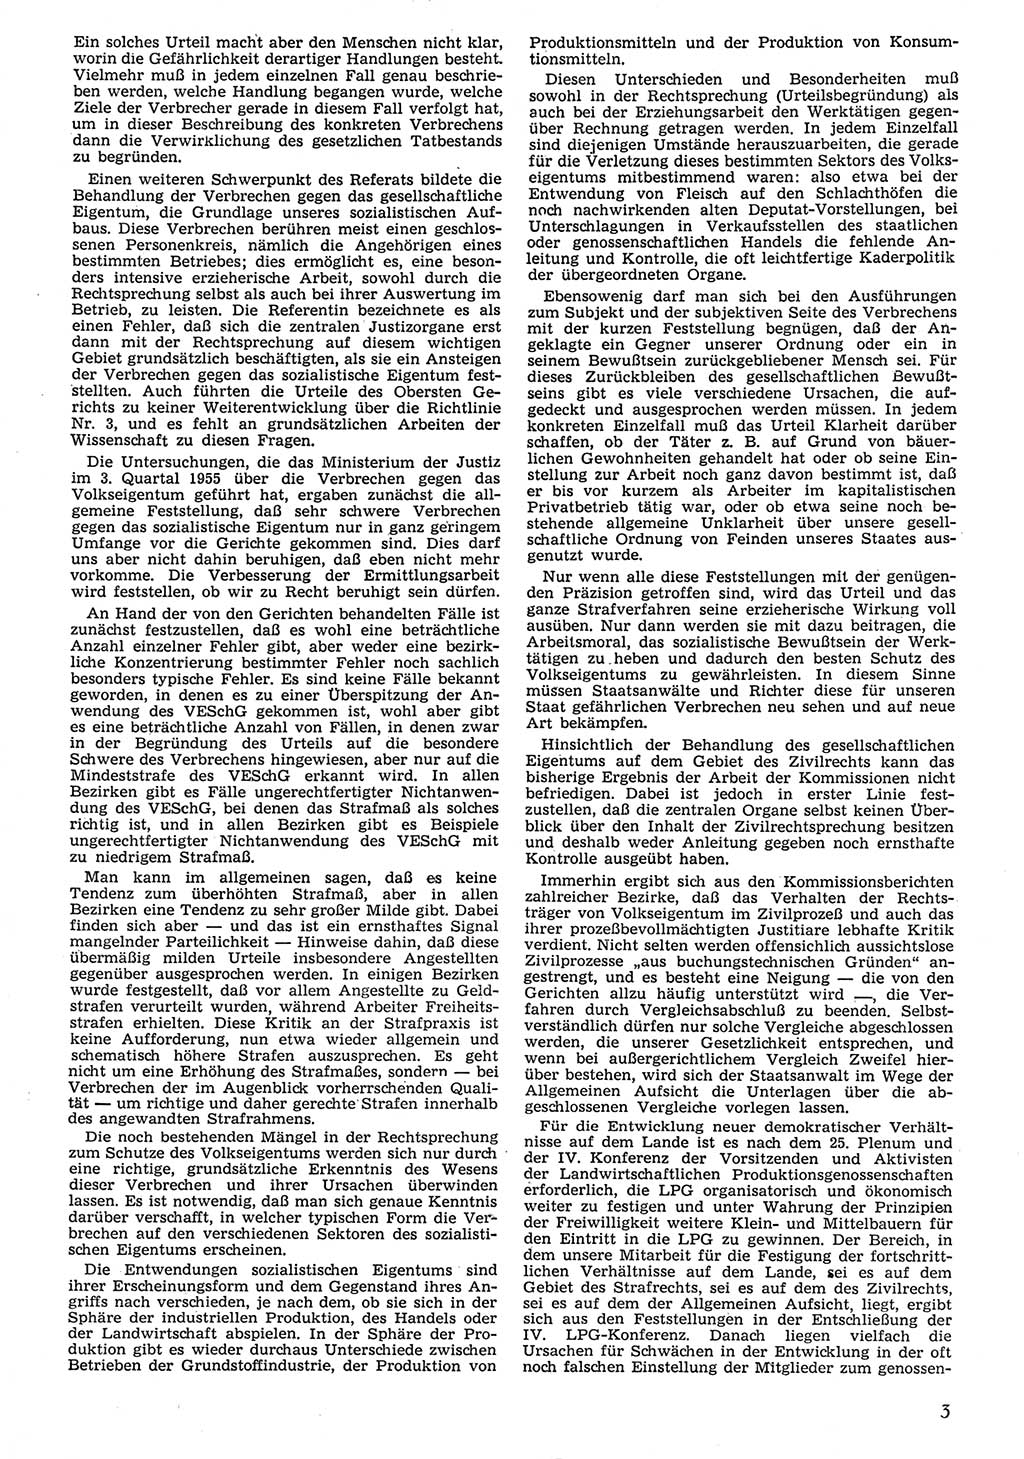 Neue Justiz (NJ), Zeitschrift für Recht und Rechtswissenschaft [Deutsche Demokratische Republik (DDR)], 10. Jahrgang 1956, Seite 3 (NJ DDR 1956, S. 3)